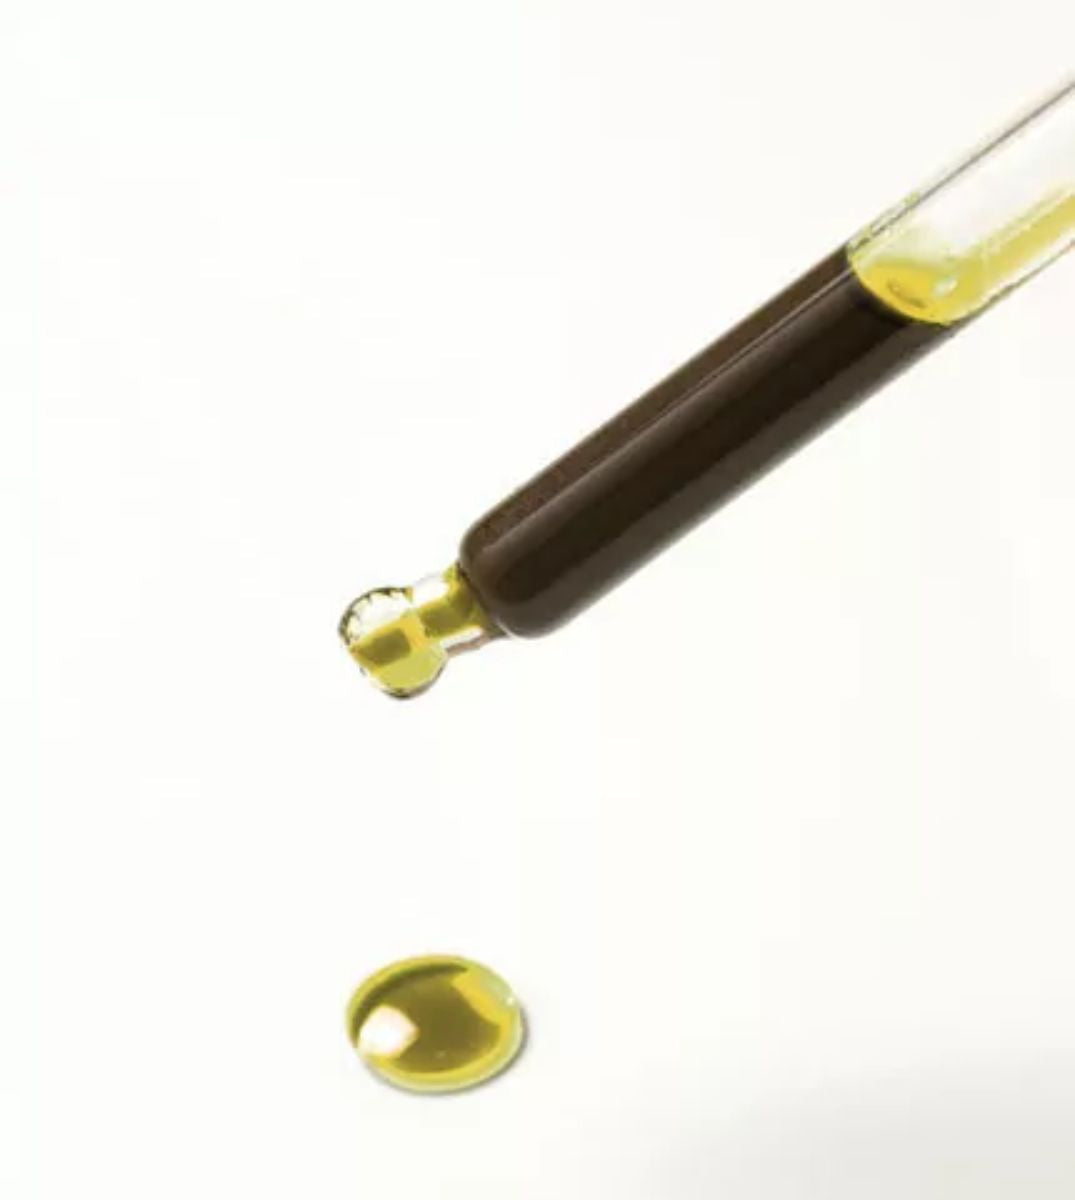 Nahaufnahme einer Pipette mit einem Tropfen goldenes CBD Öl, mit einem weiteren Tropfen darunter auf einem weißen Hintergrund, der die Reinheit und Konzentration des Öls hervorhebt.